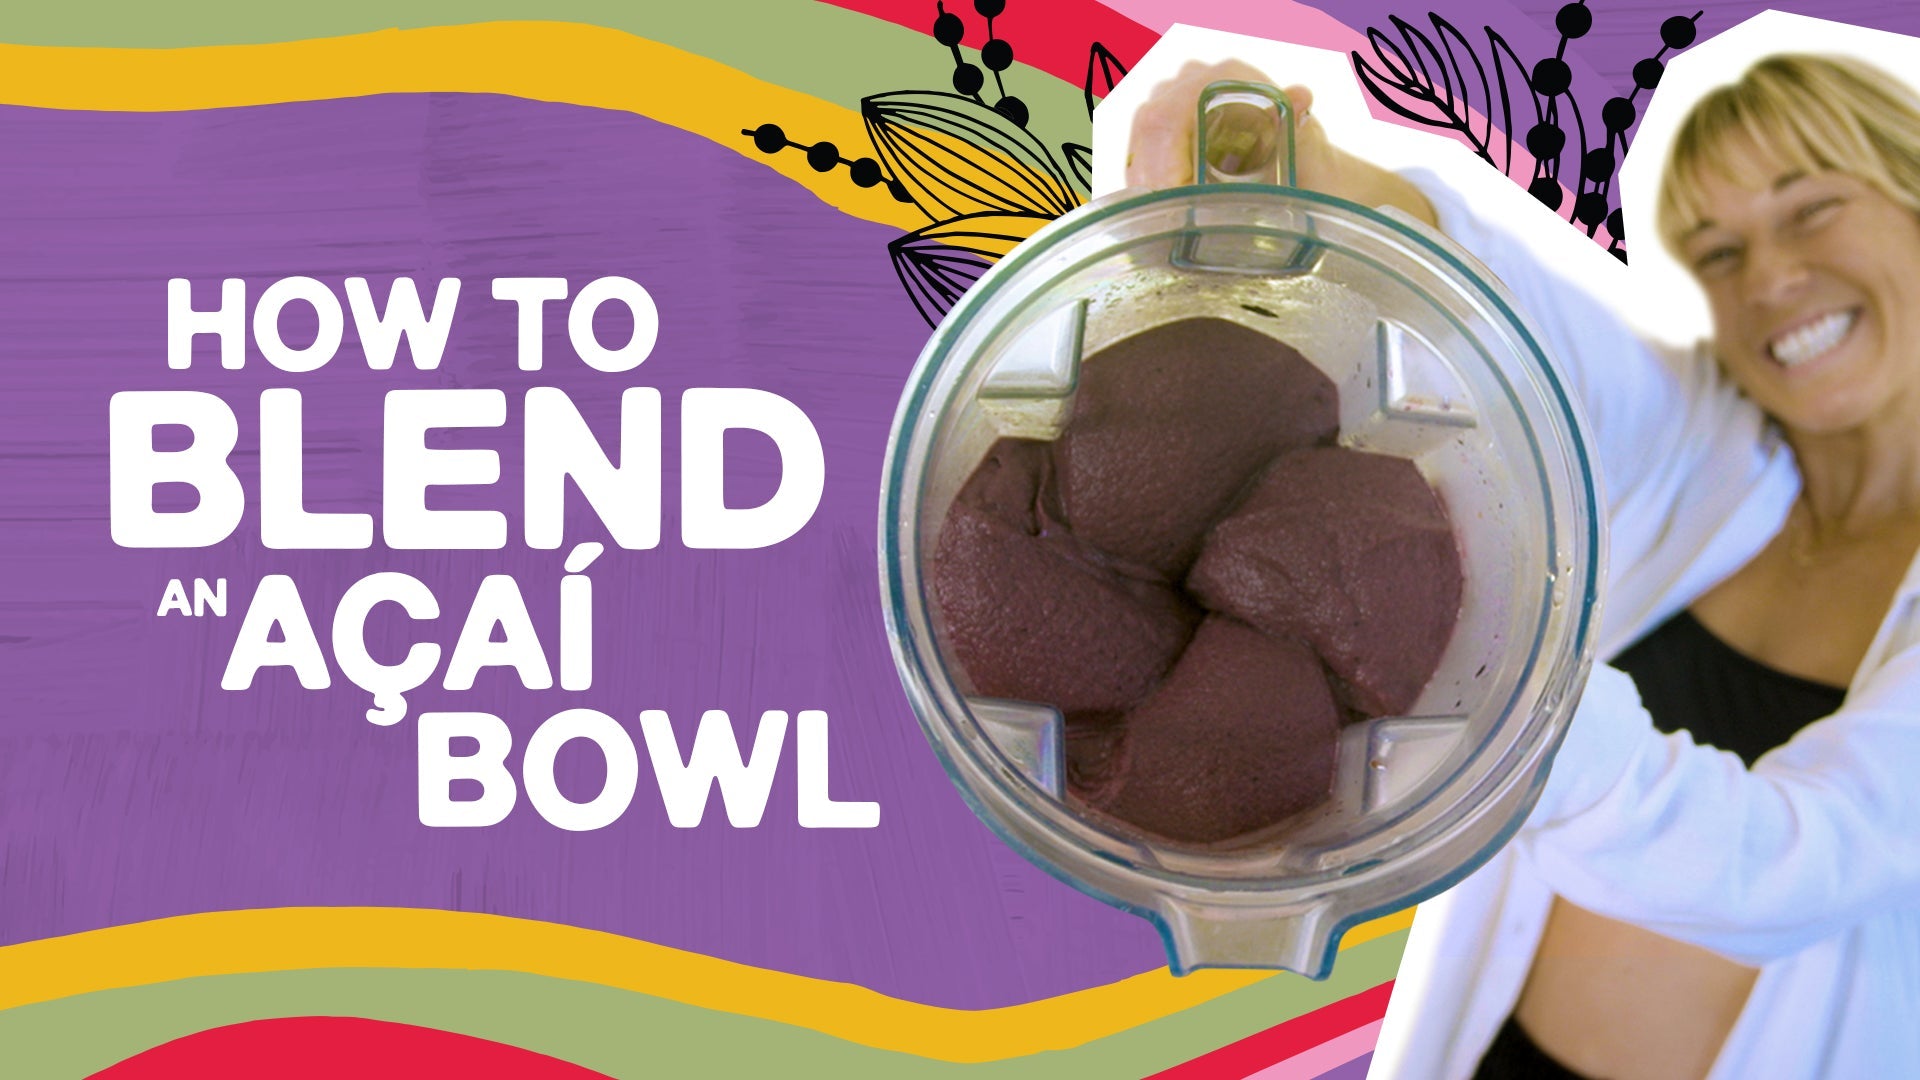 Carregar vídeo: how to blend an acai bowl